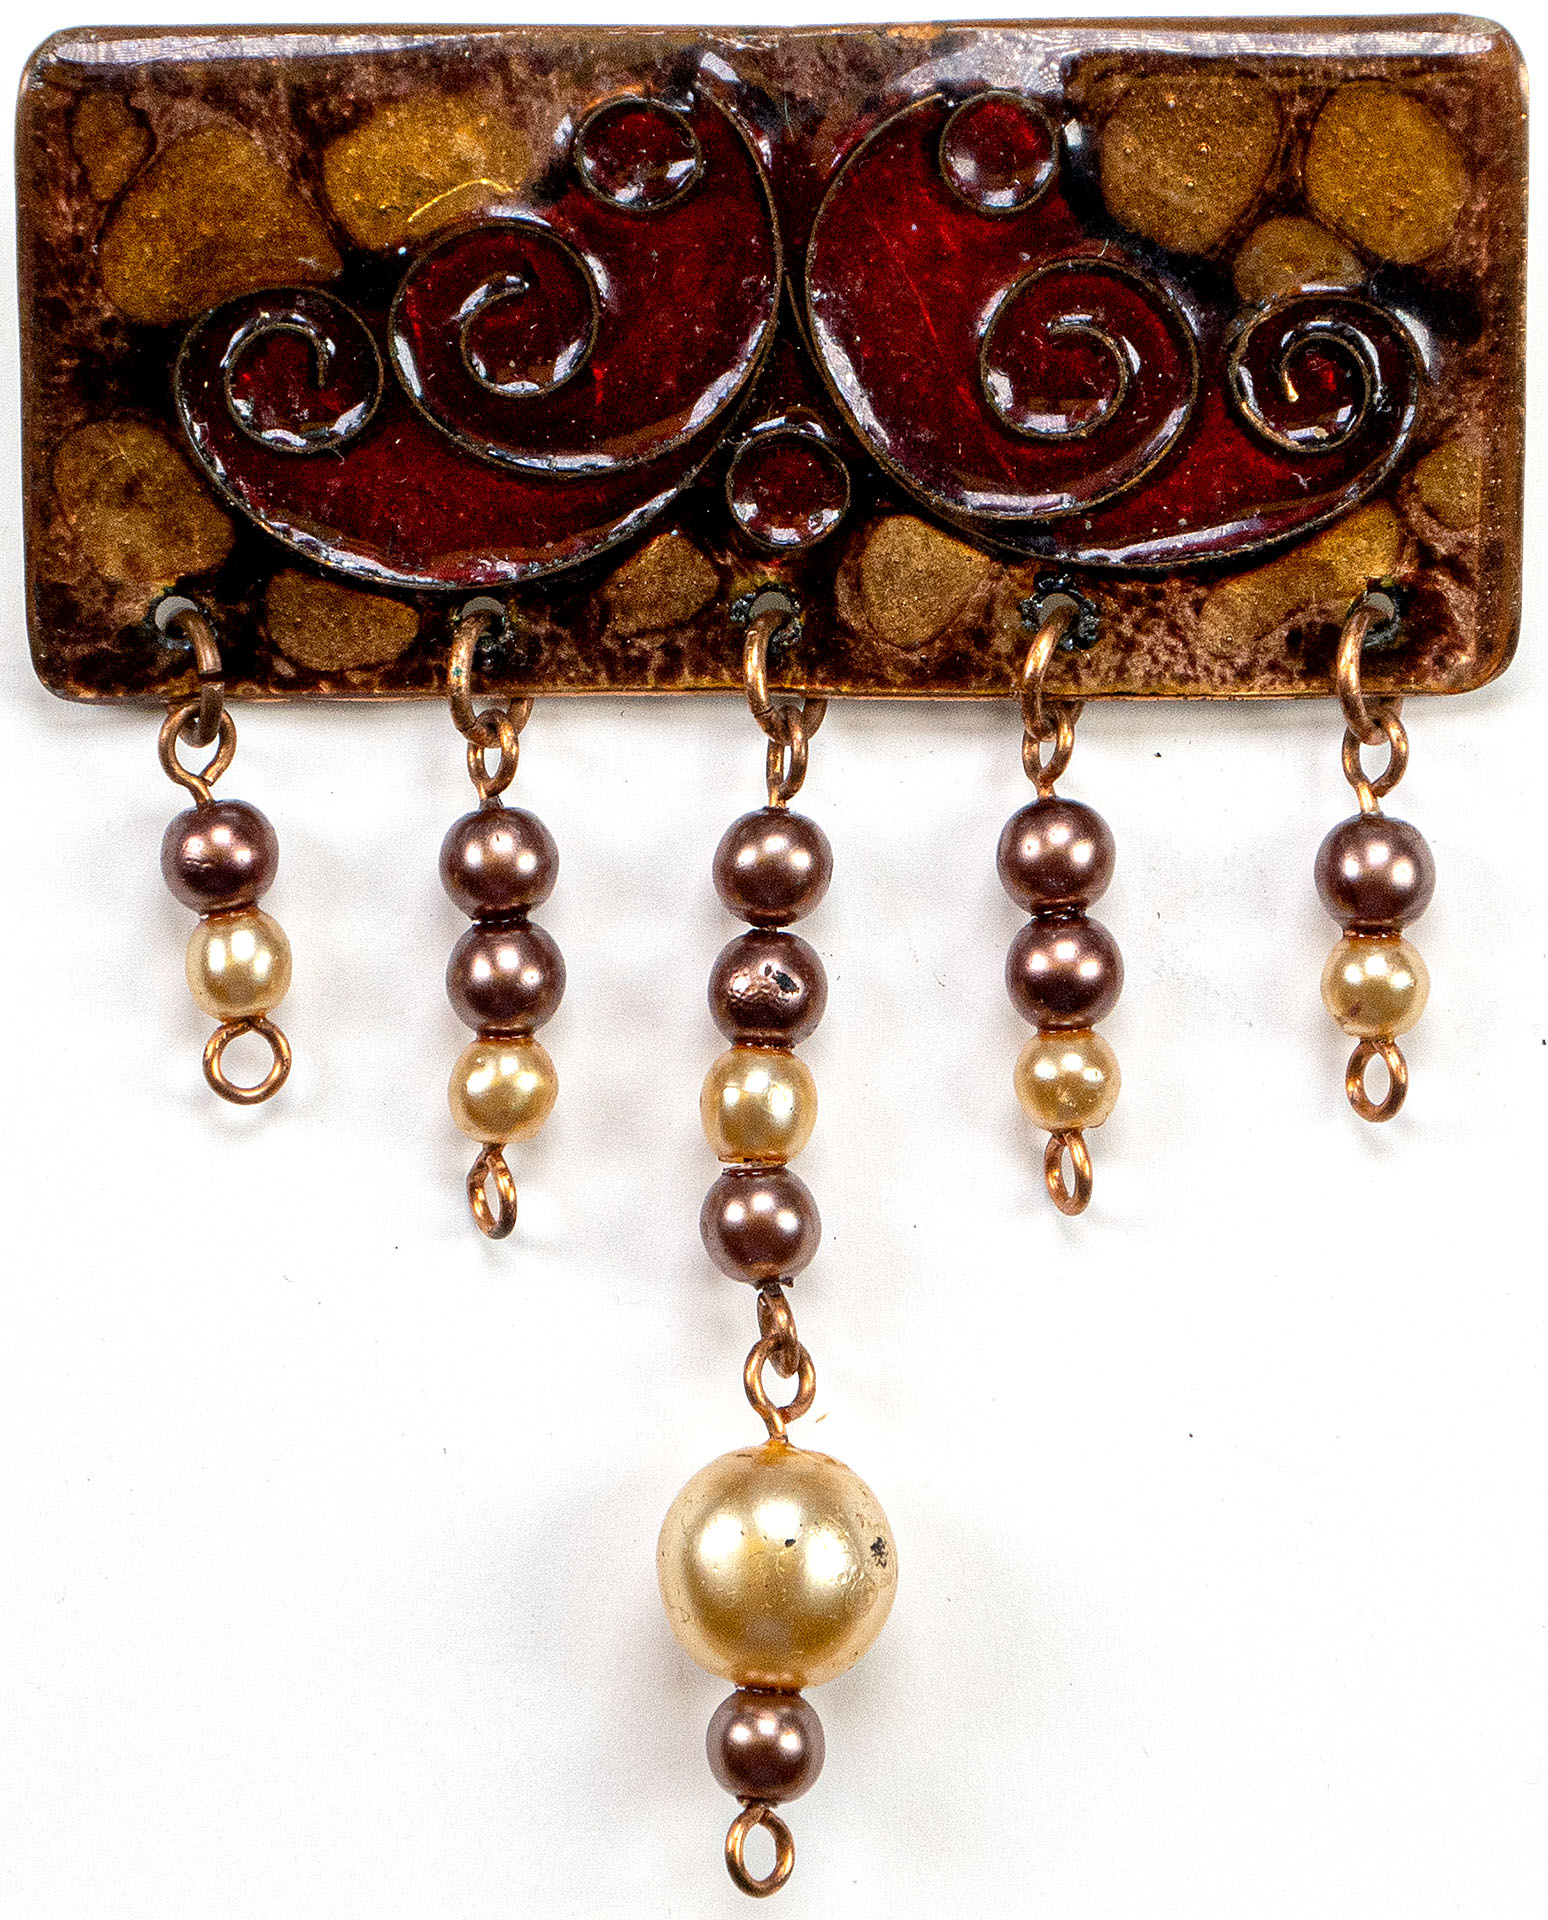 Kupferfarbene, emaulierte Brosche mit verschiedenfarbigen Perlen